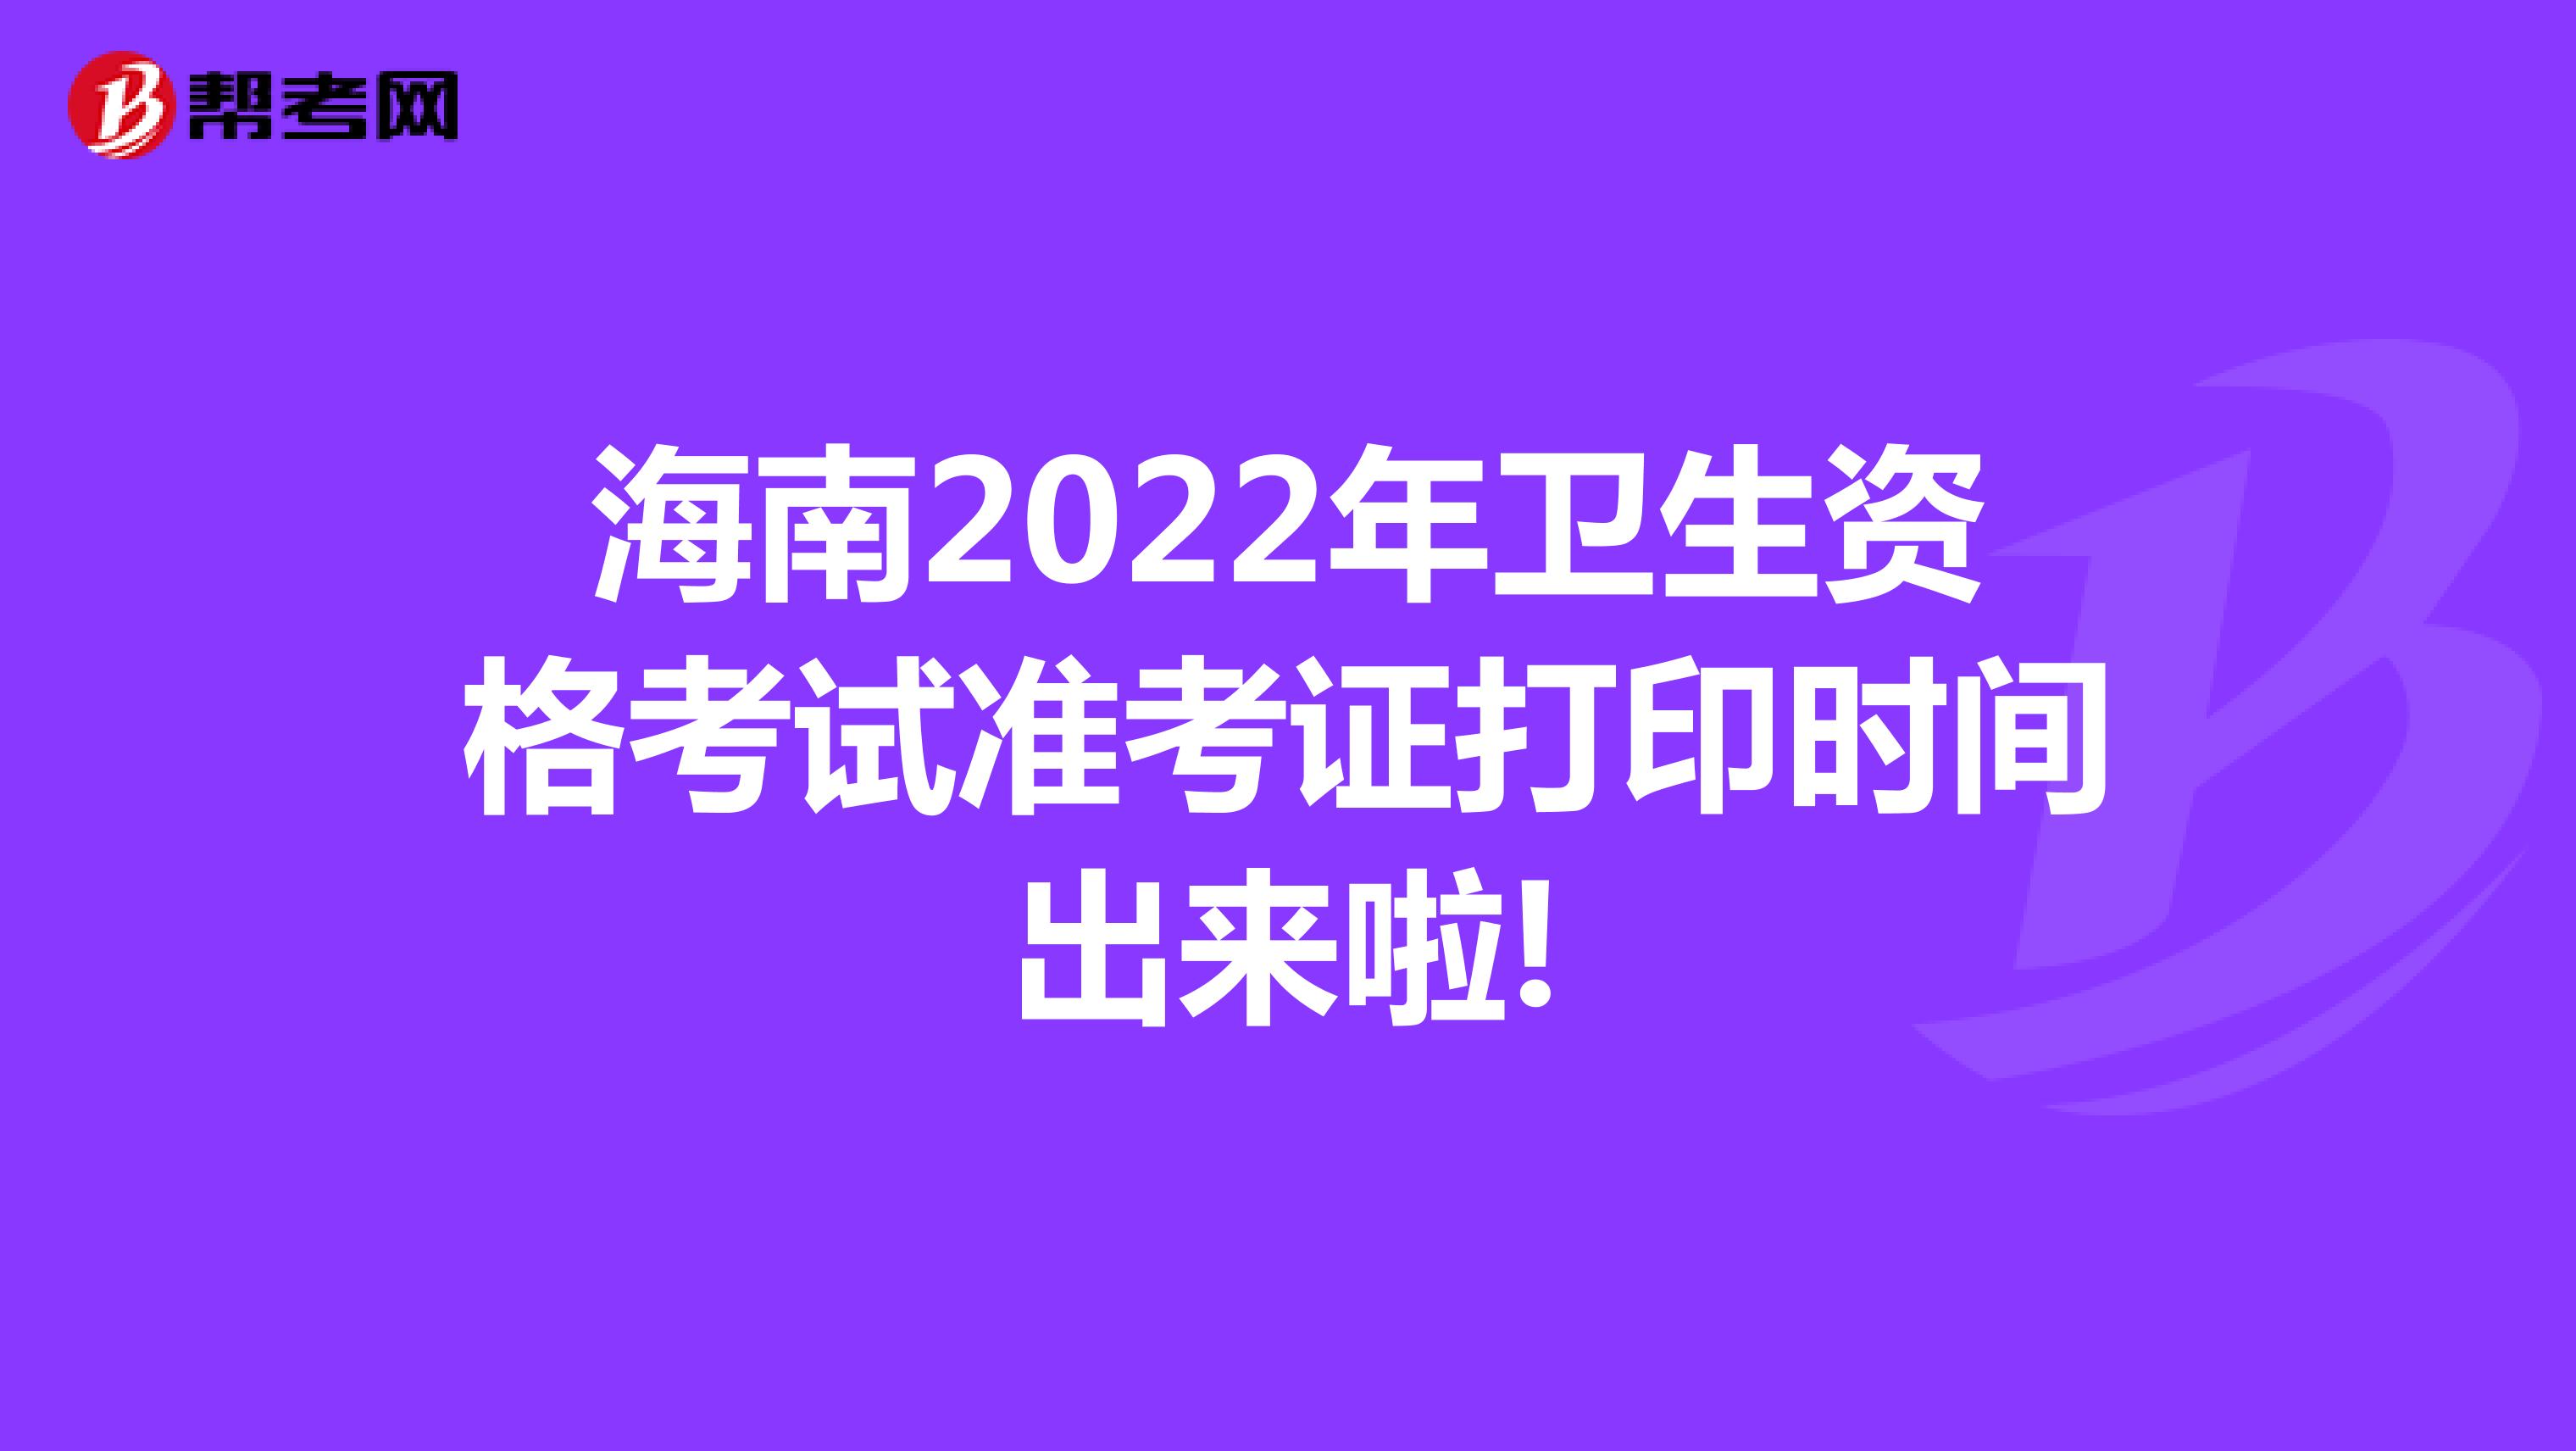 海南2022年卫生资格考试准考证打印时间出来啦!